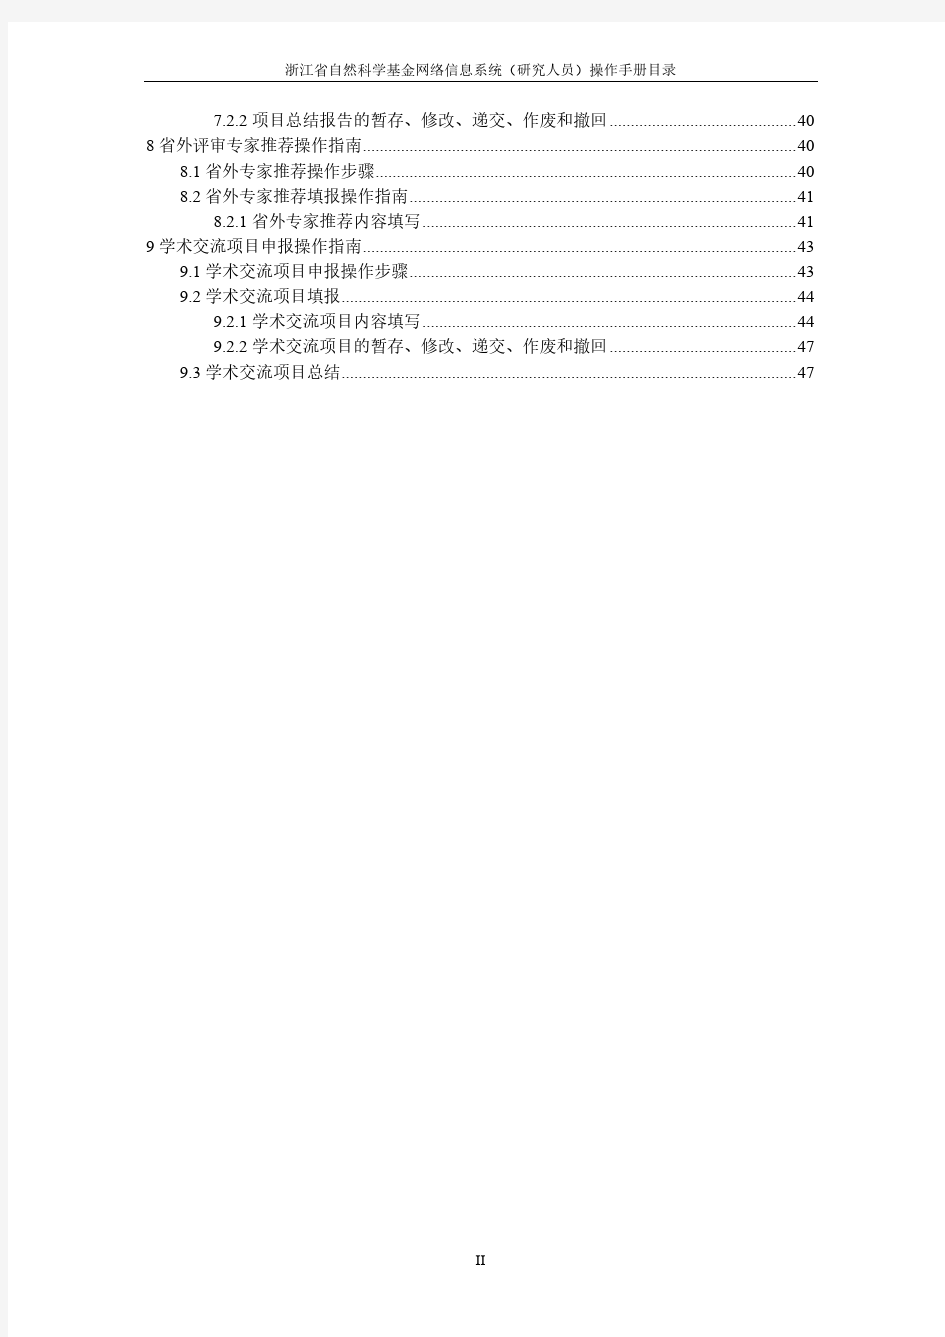 浙江省自然科学基金网络信息系统——研究人员操作手册(2014.9修订终版)